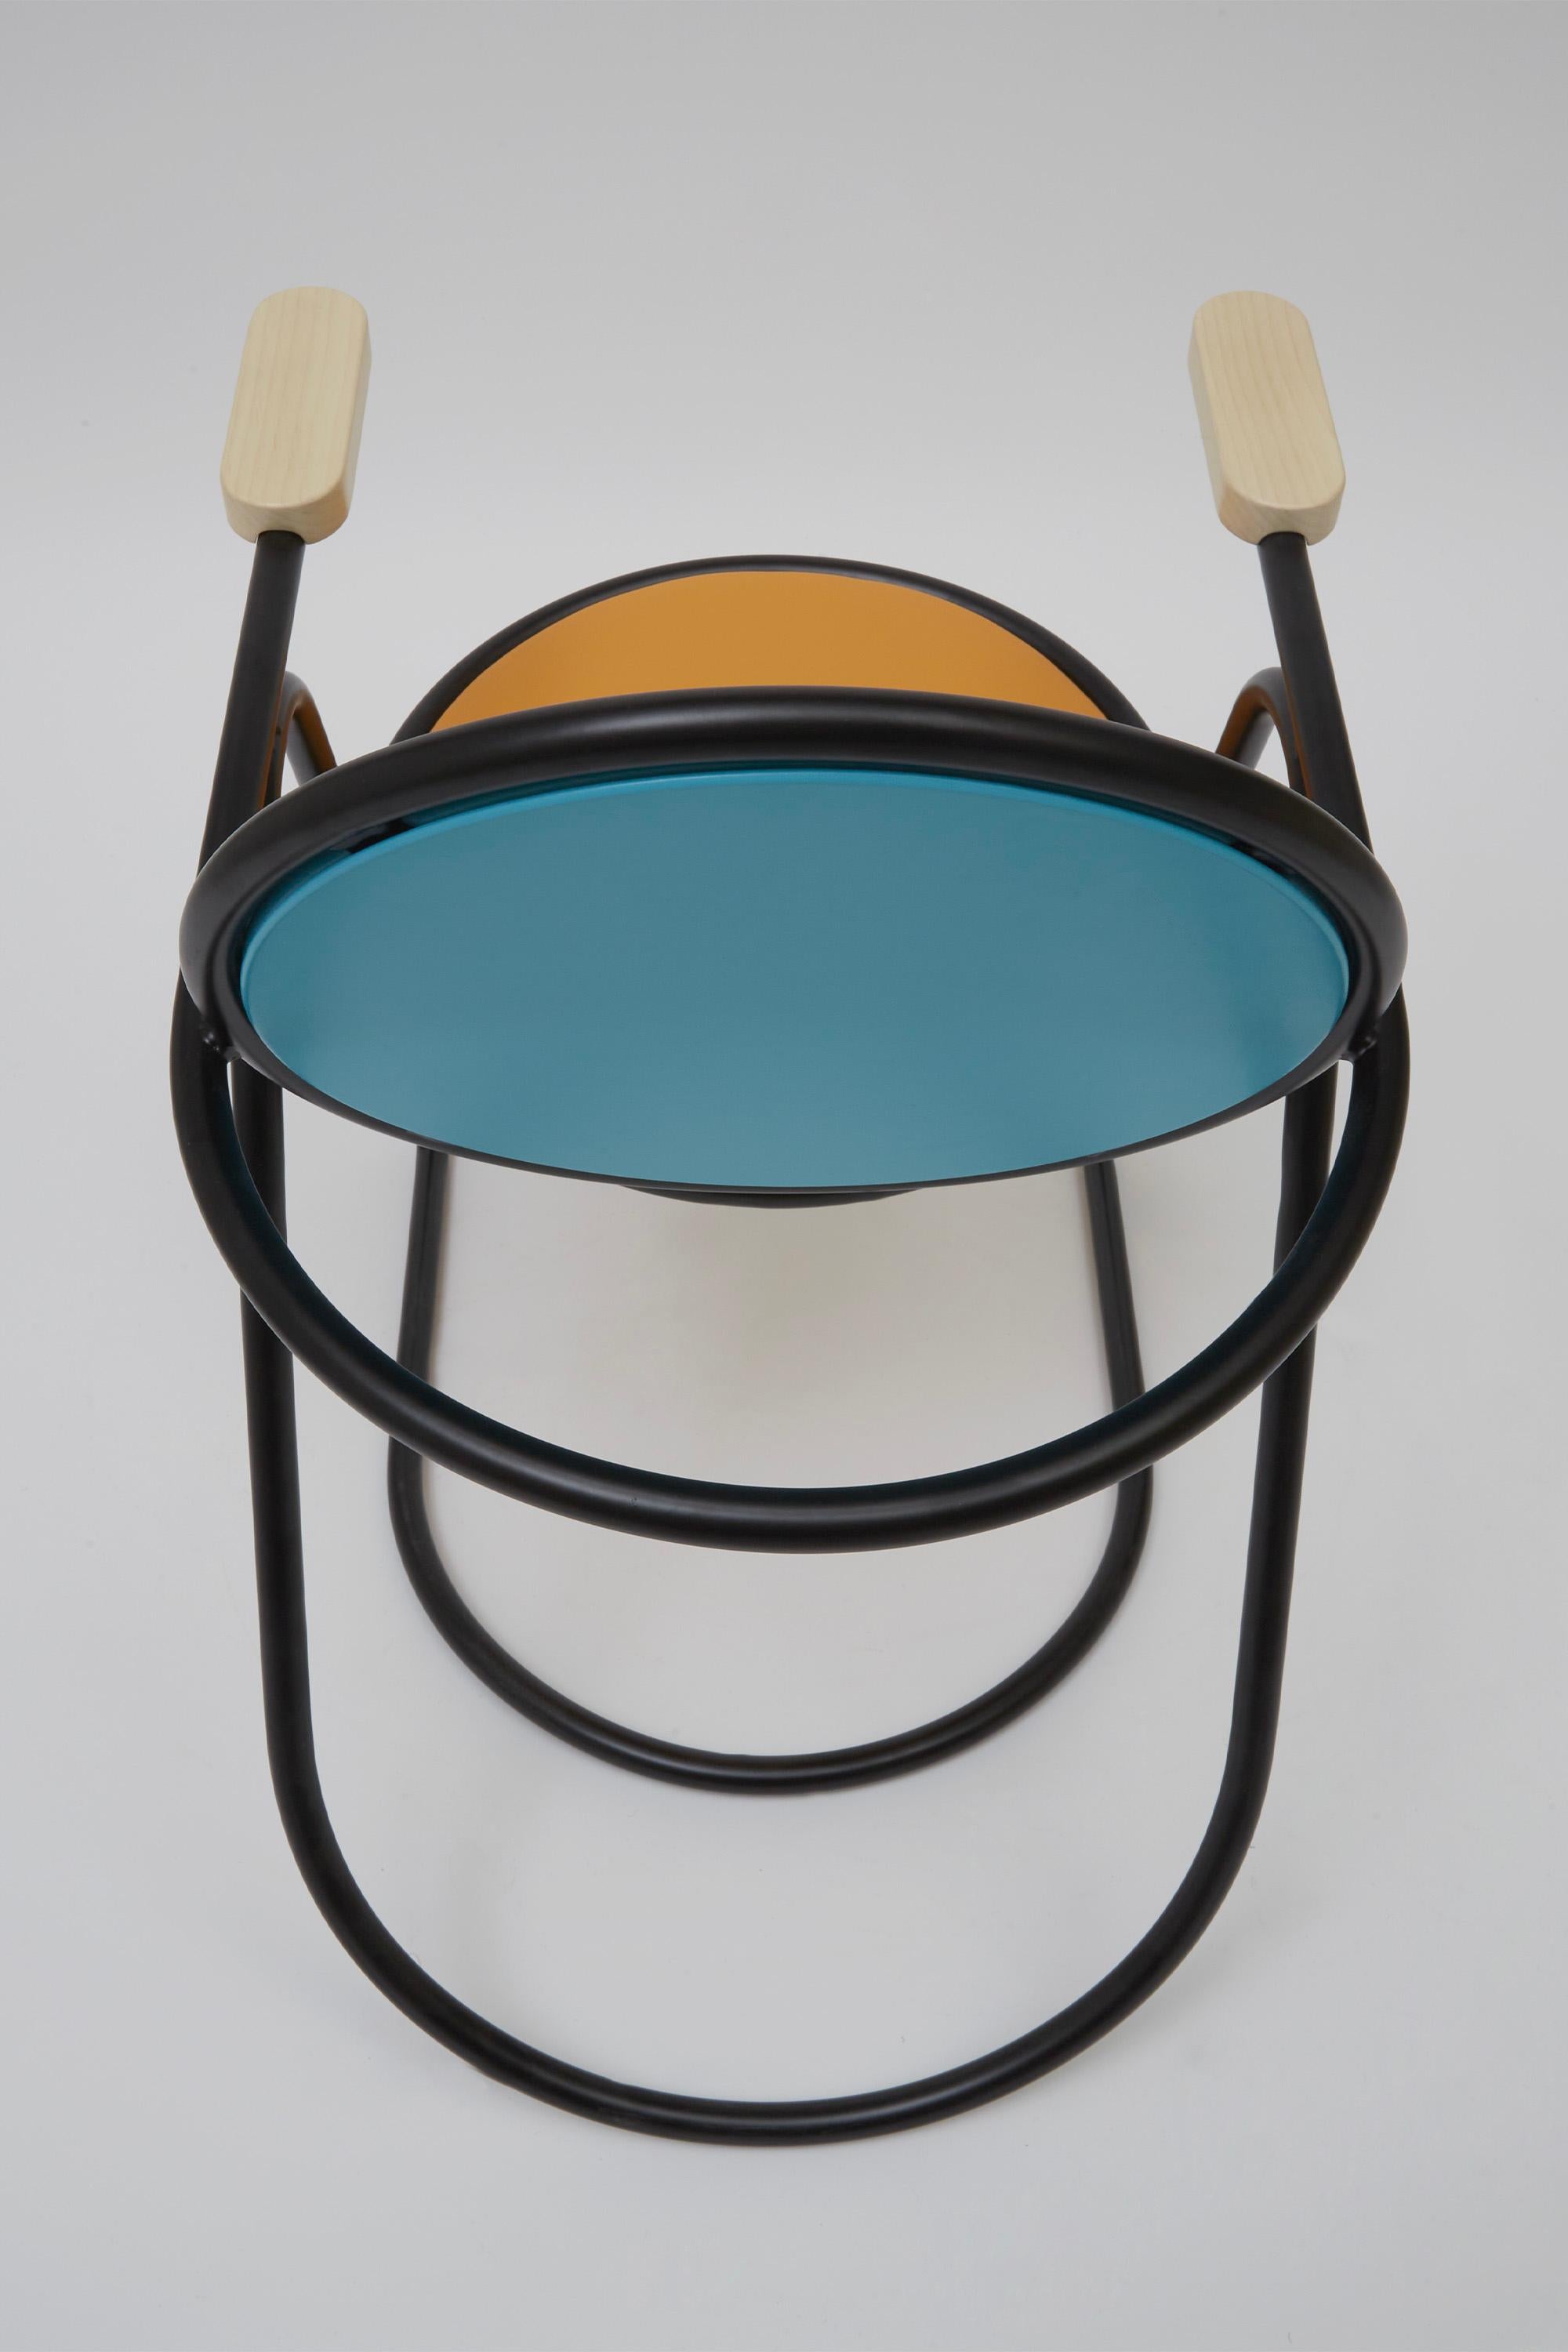 U-Disk Easy Chair, Black, Orange & Light Blue For Sale 3